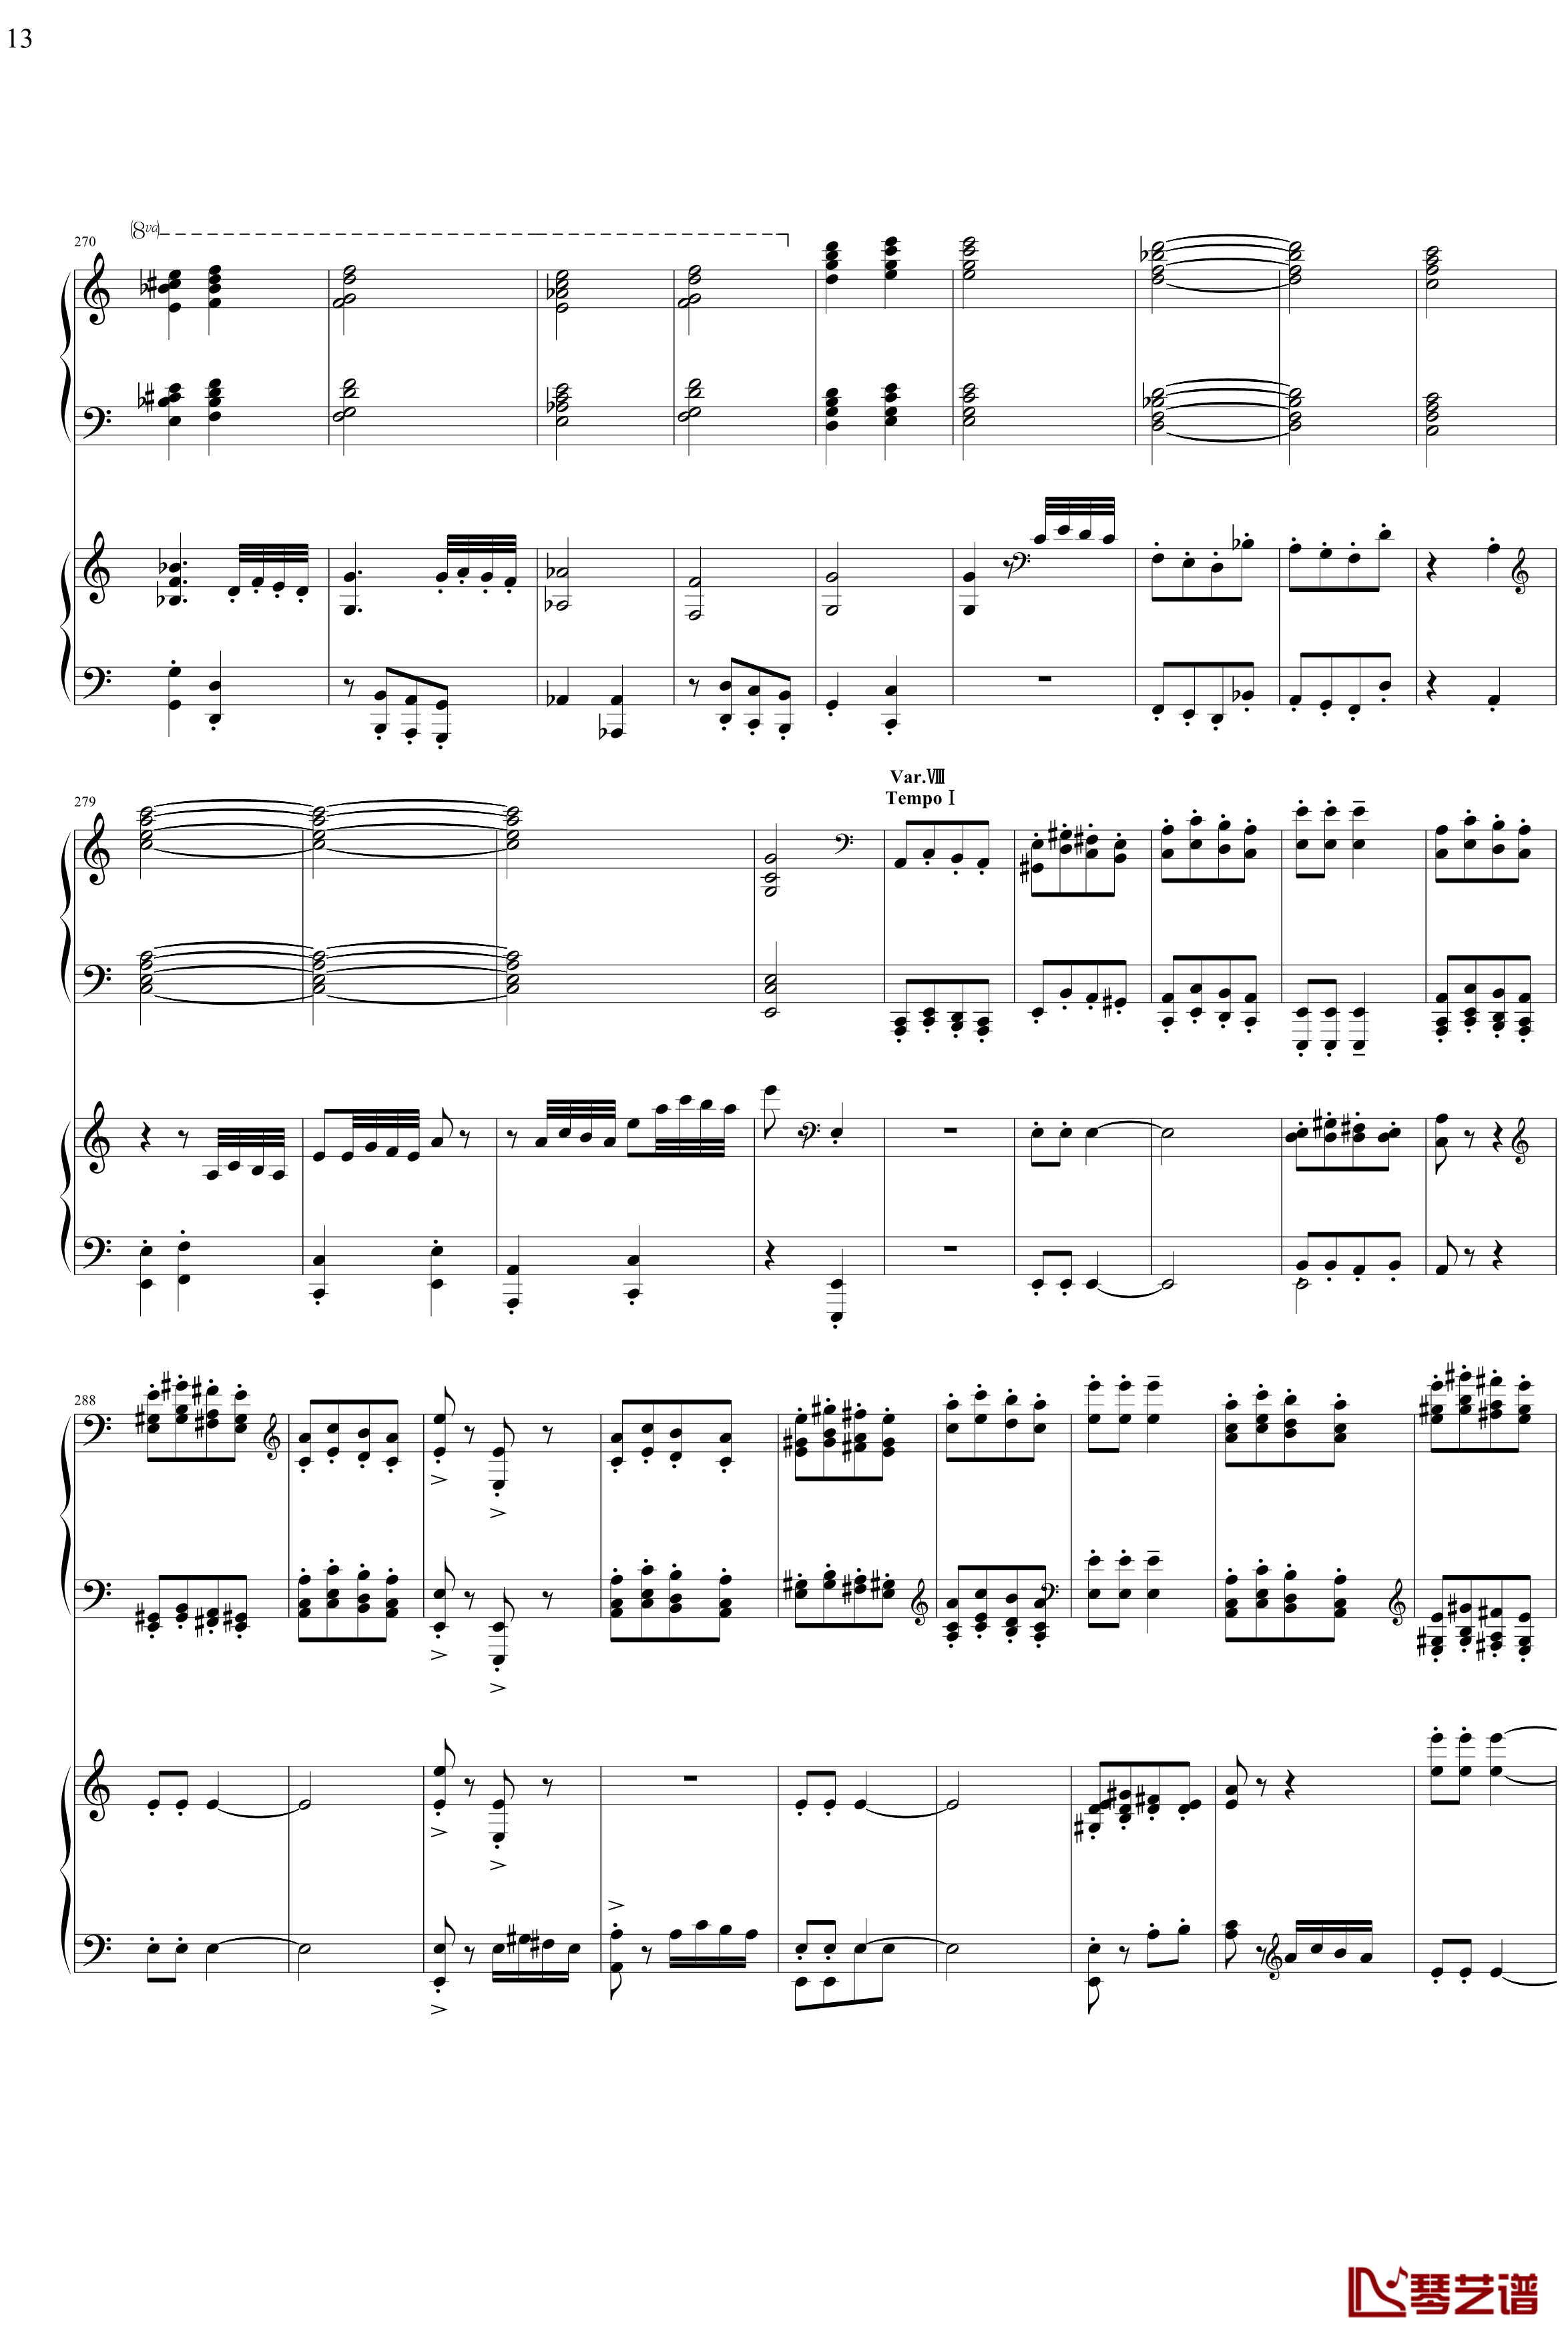 帕格尼主题狂想曲钢琴谱-1~10变奏-拉赫马尼若夫13